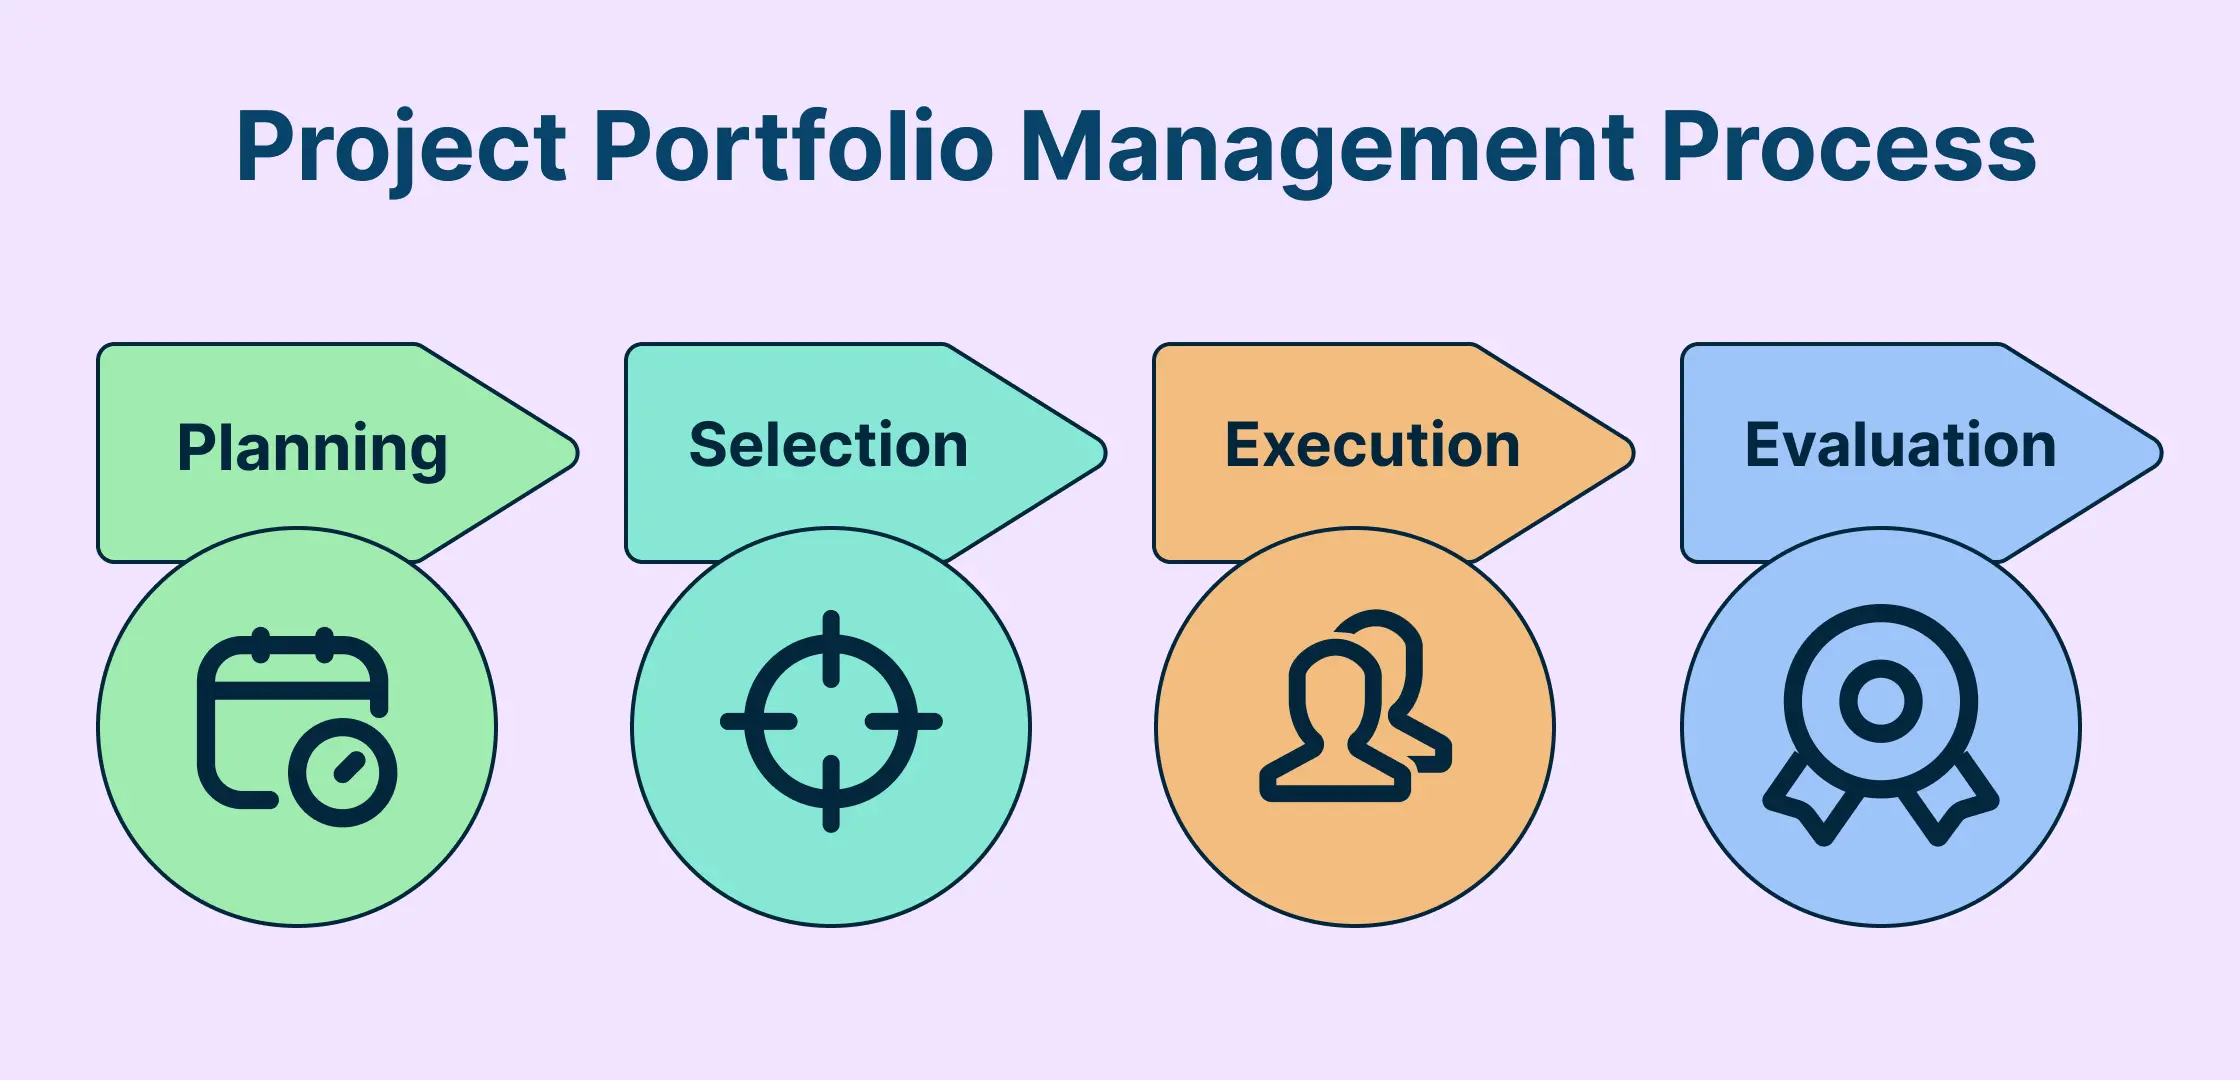 Project Portfolio Management Process